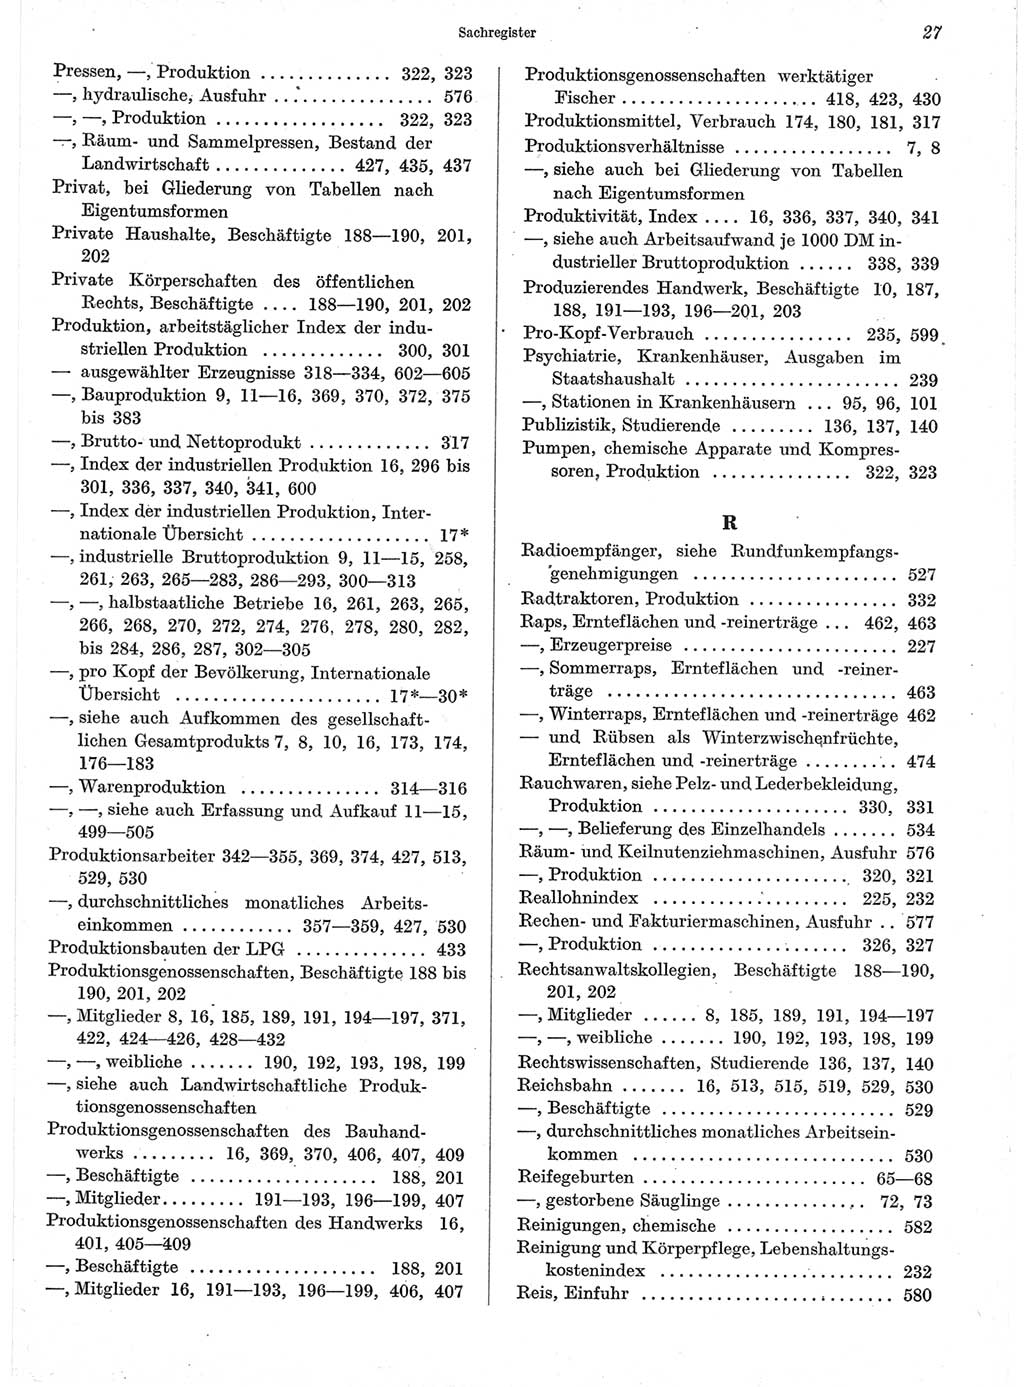 Statistisches Jahrbuch der Deutschen Demokratischen Republik (DDR) 1960-1961, Seite 27 (Stat. Jb. DDR 1960-1961, S. 27)